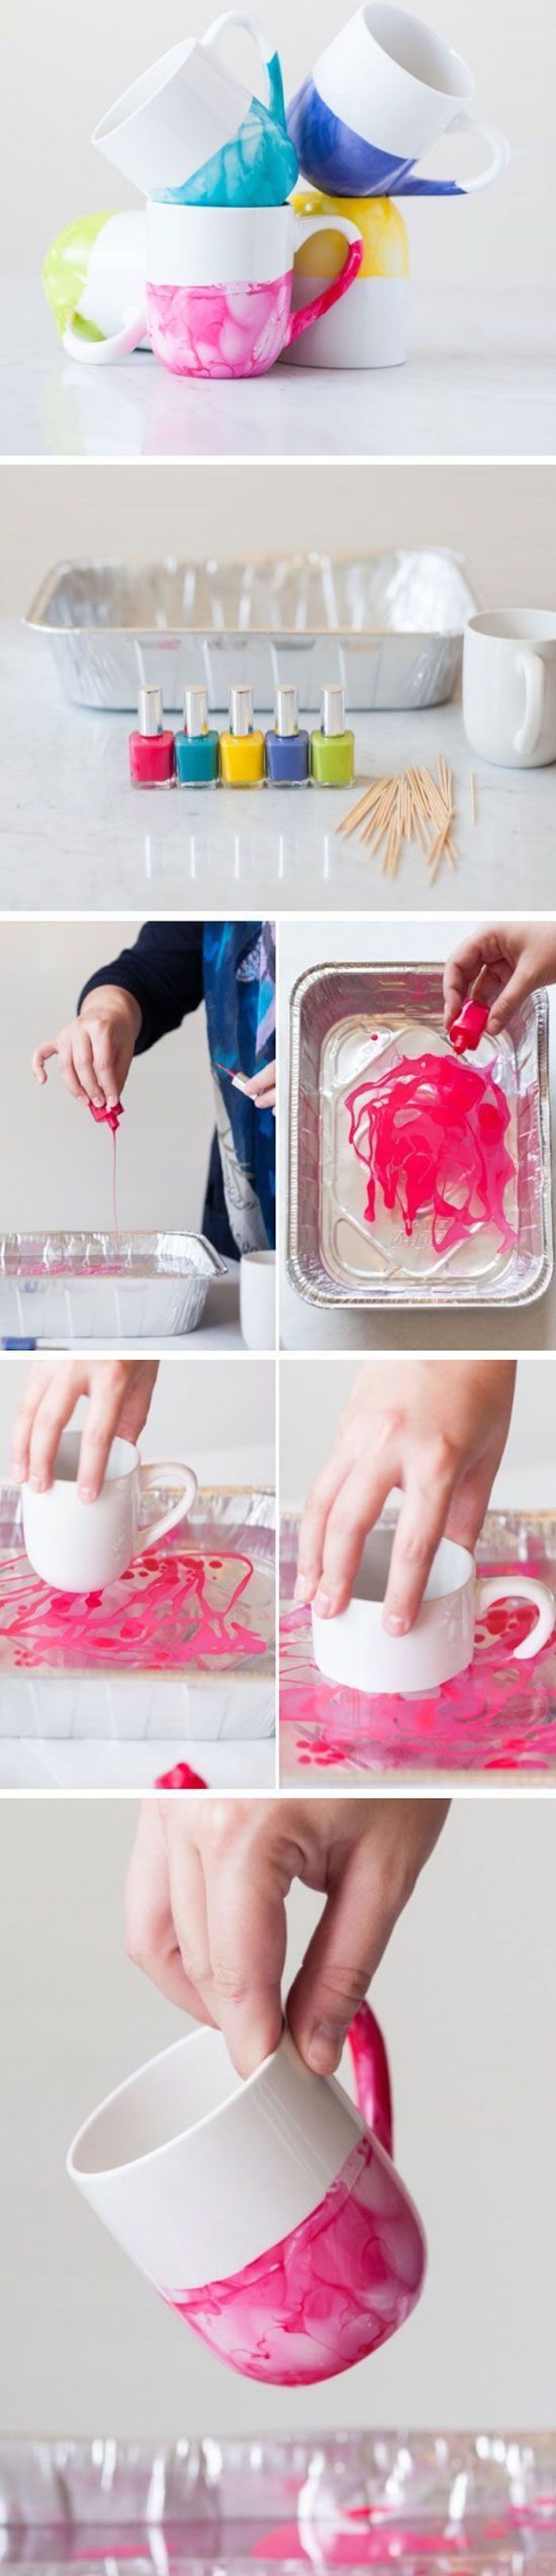 Idei creative, DIY, cupe cu vopsea cu lac de unghii